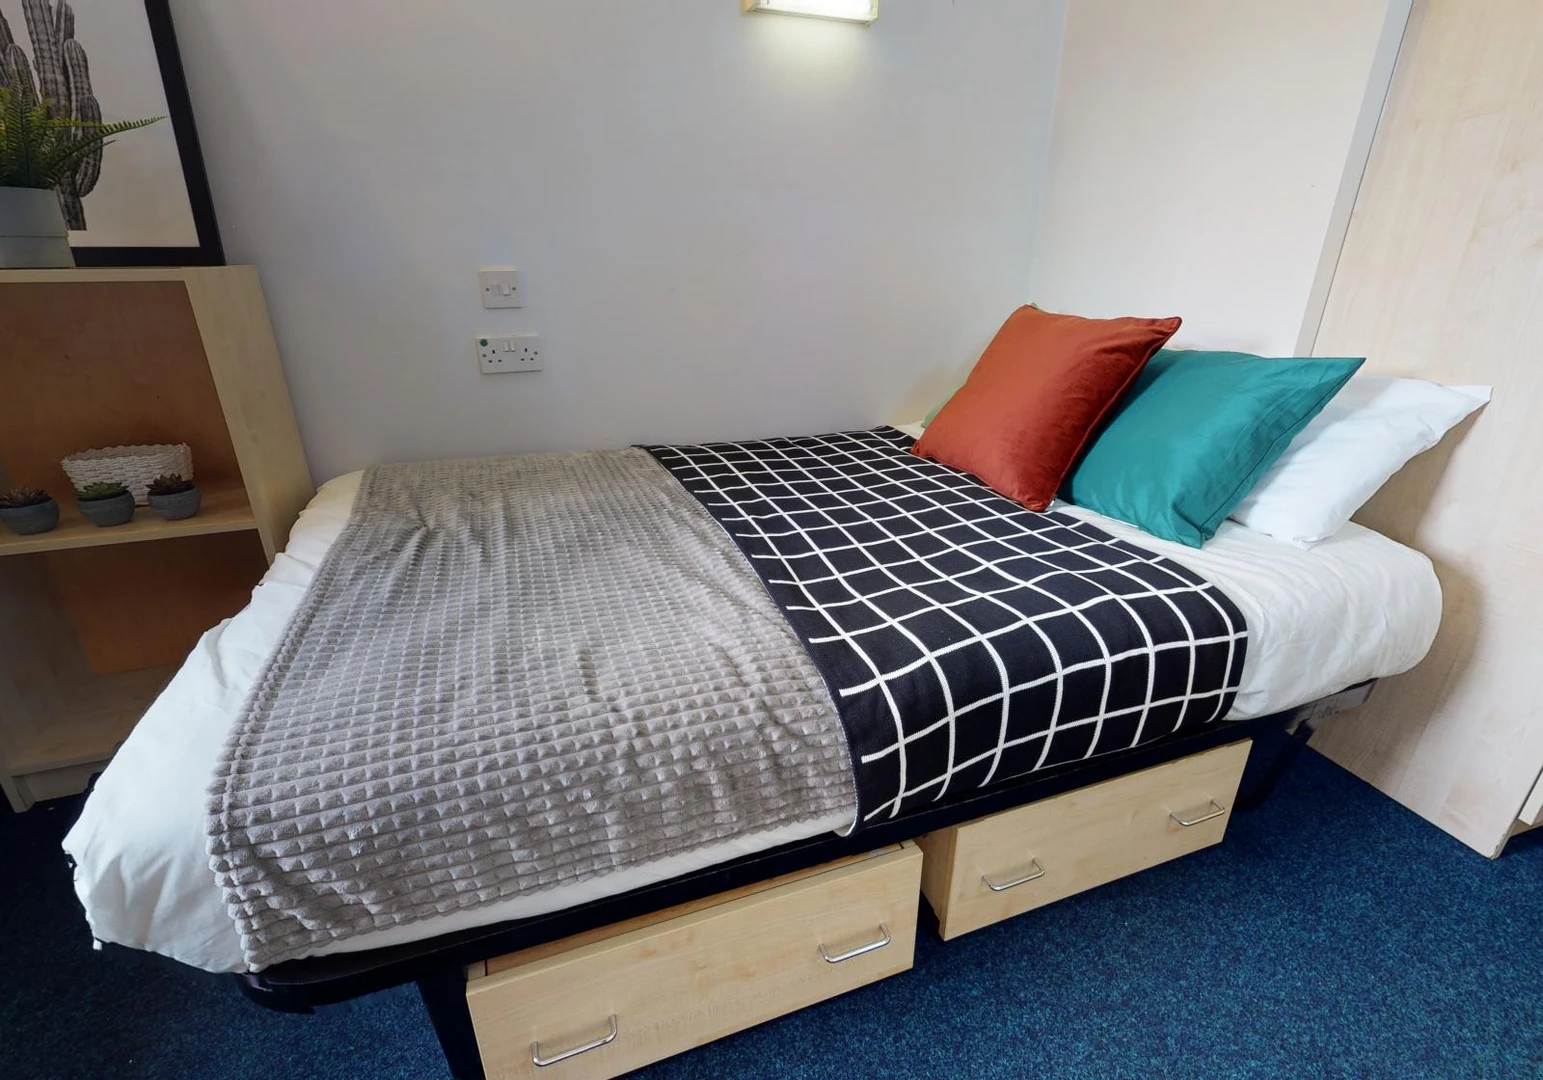 Alquiler de habitación en piso compartido en huddersfield